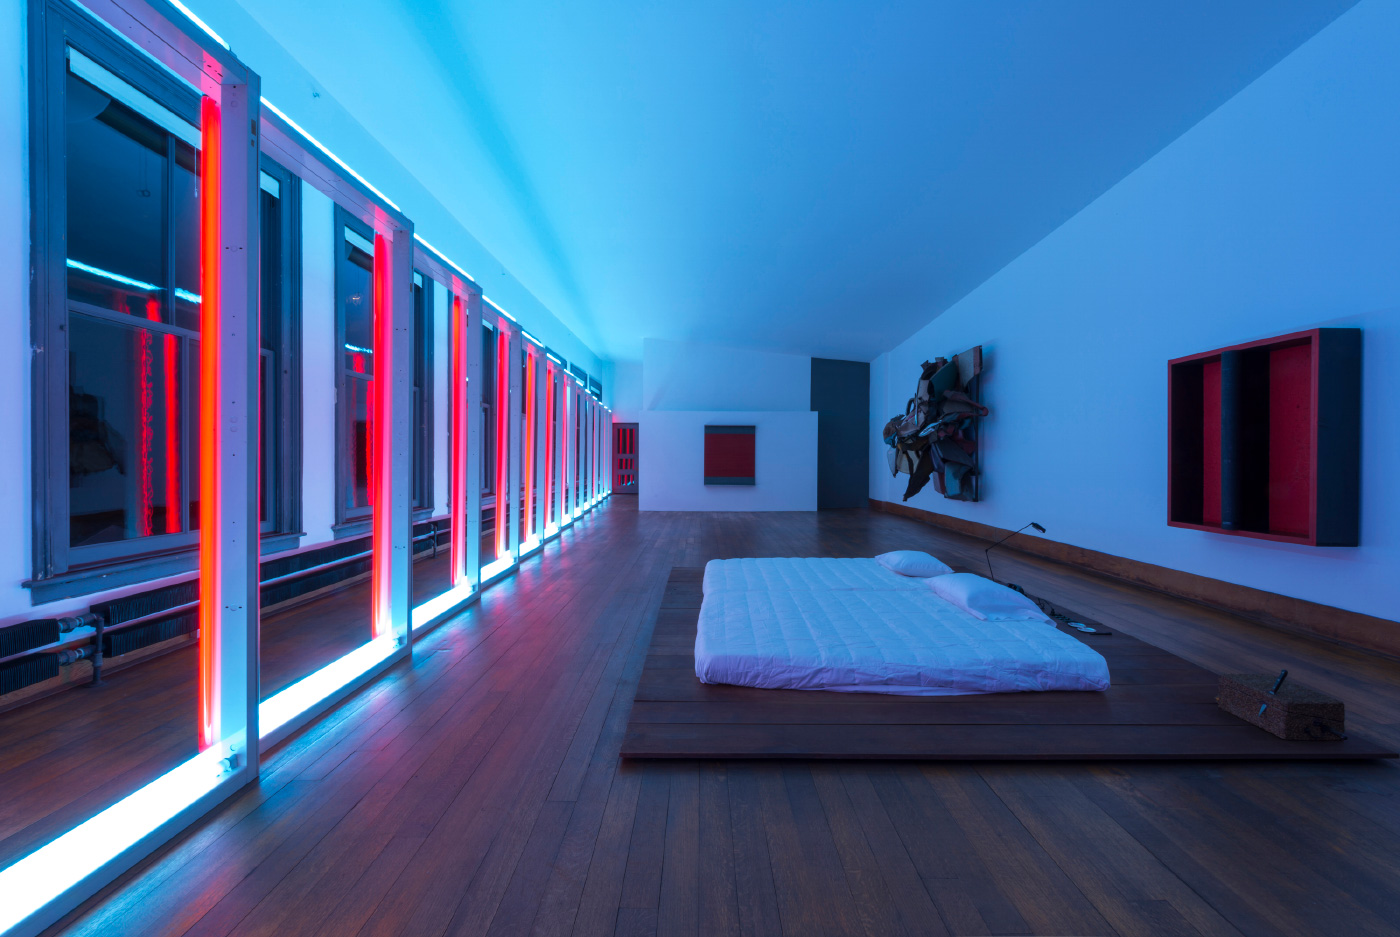 唐纳德·贾德基金会(Donald Judd Foundation)位于纽约的住宅内部，一间蓝色和粉红色的卧室